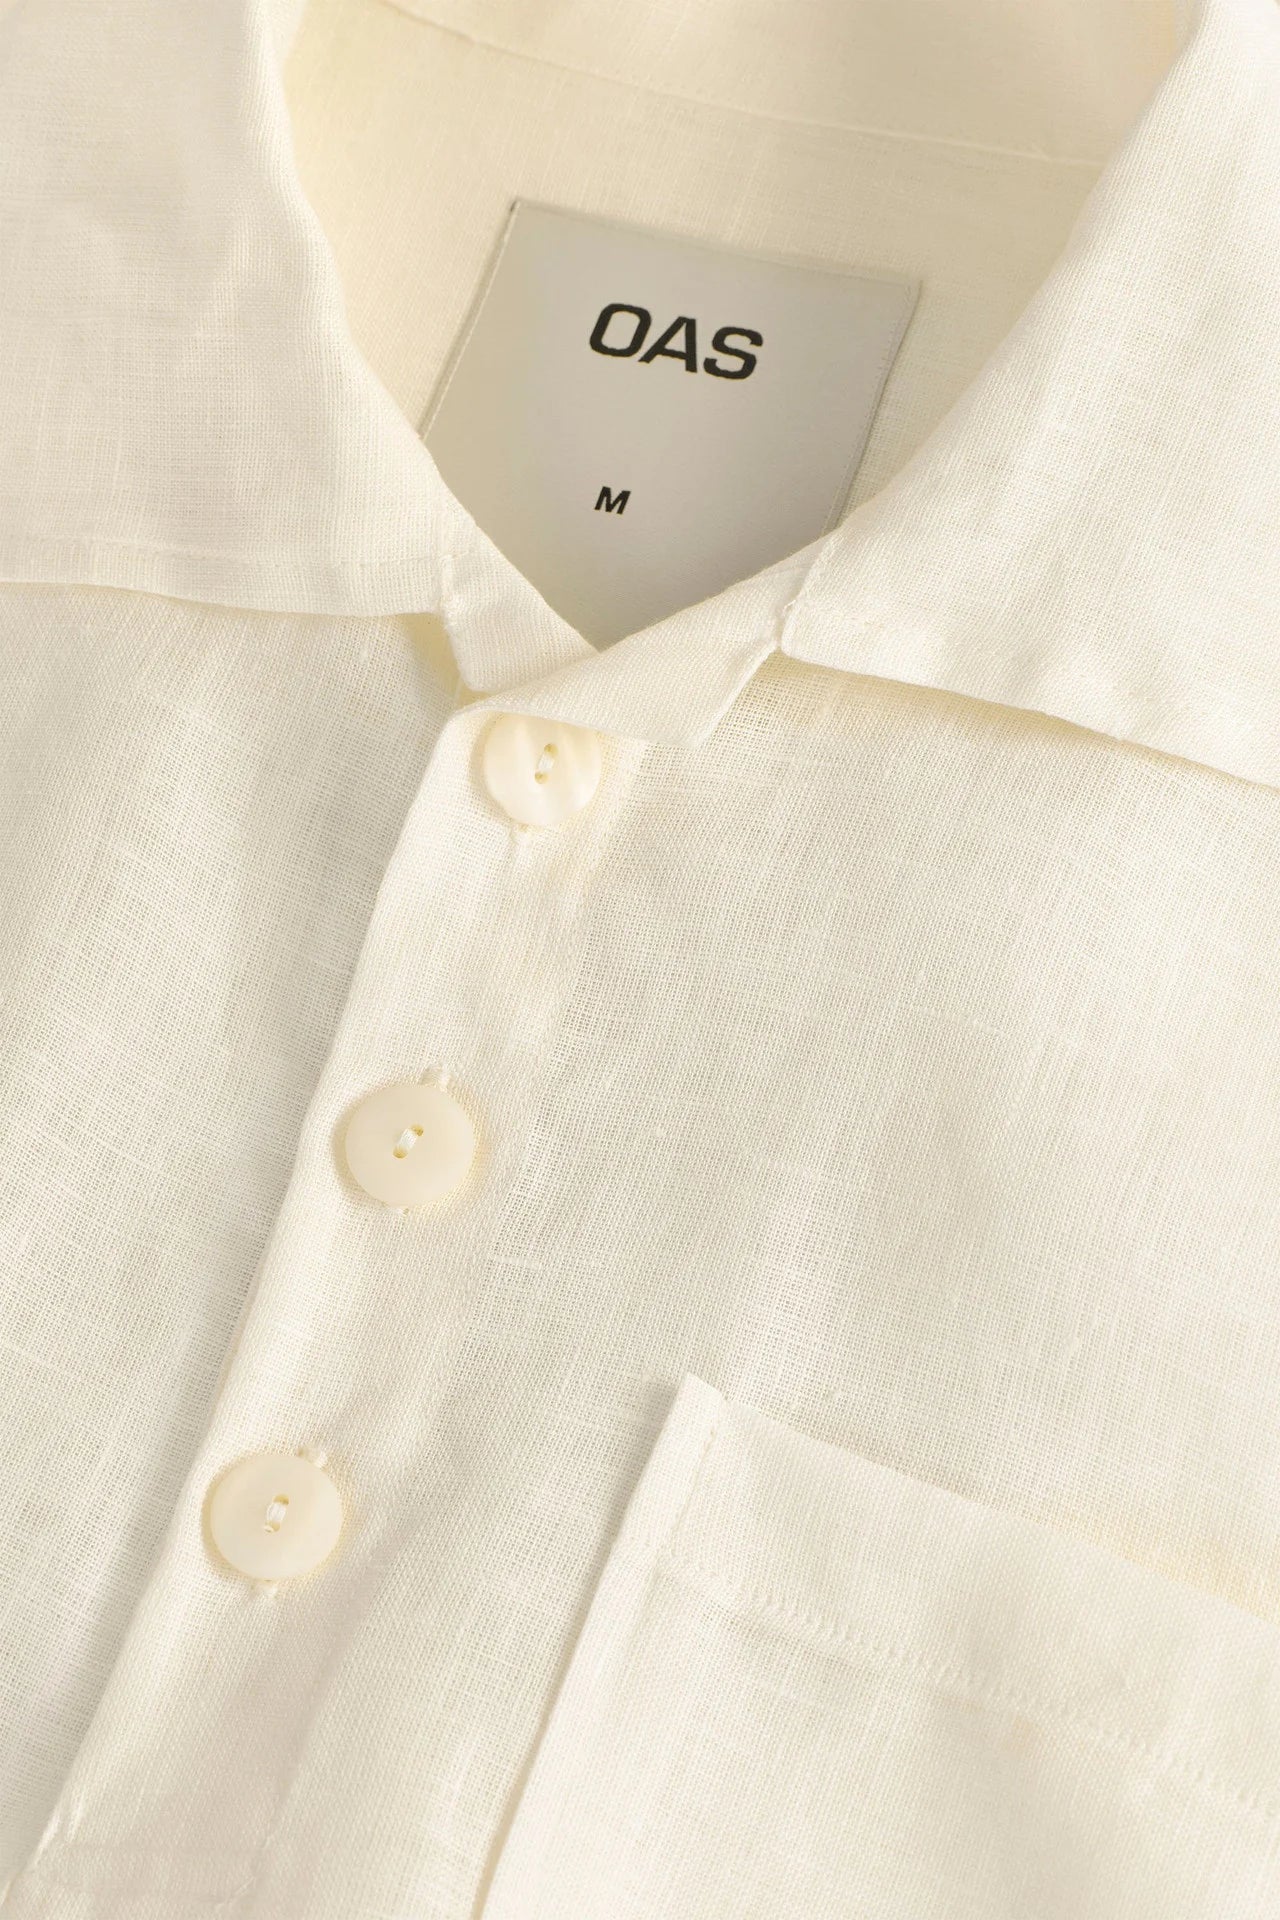 OAS Vista Girona Linen Shirt